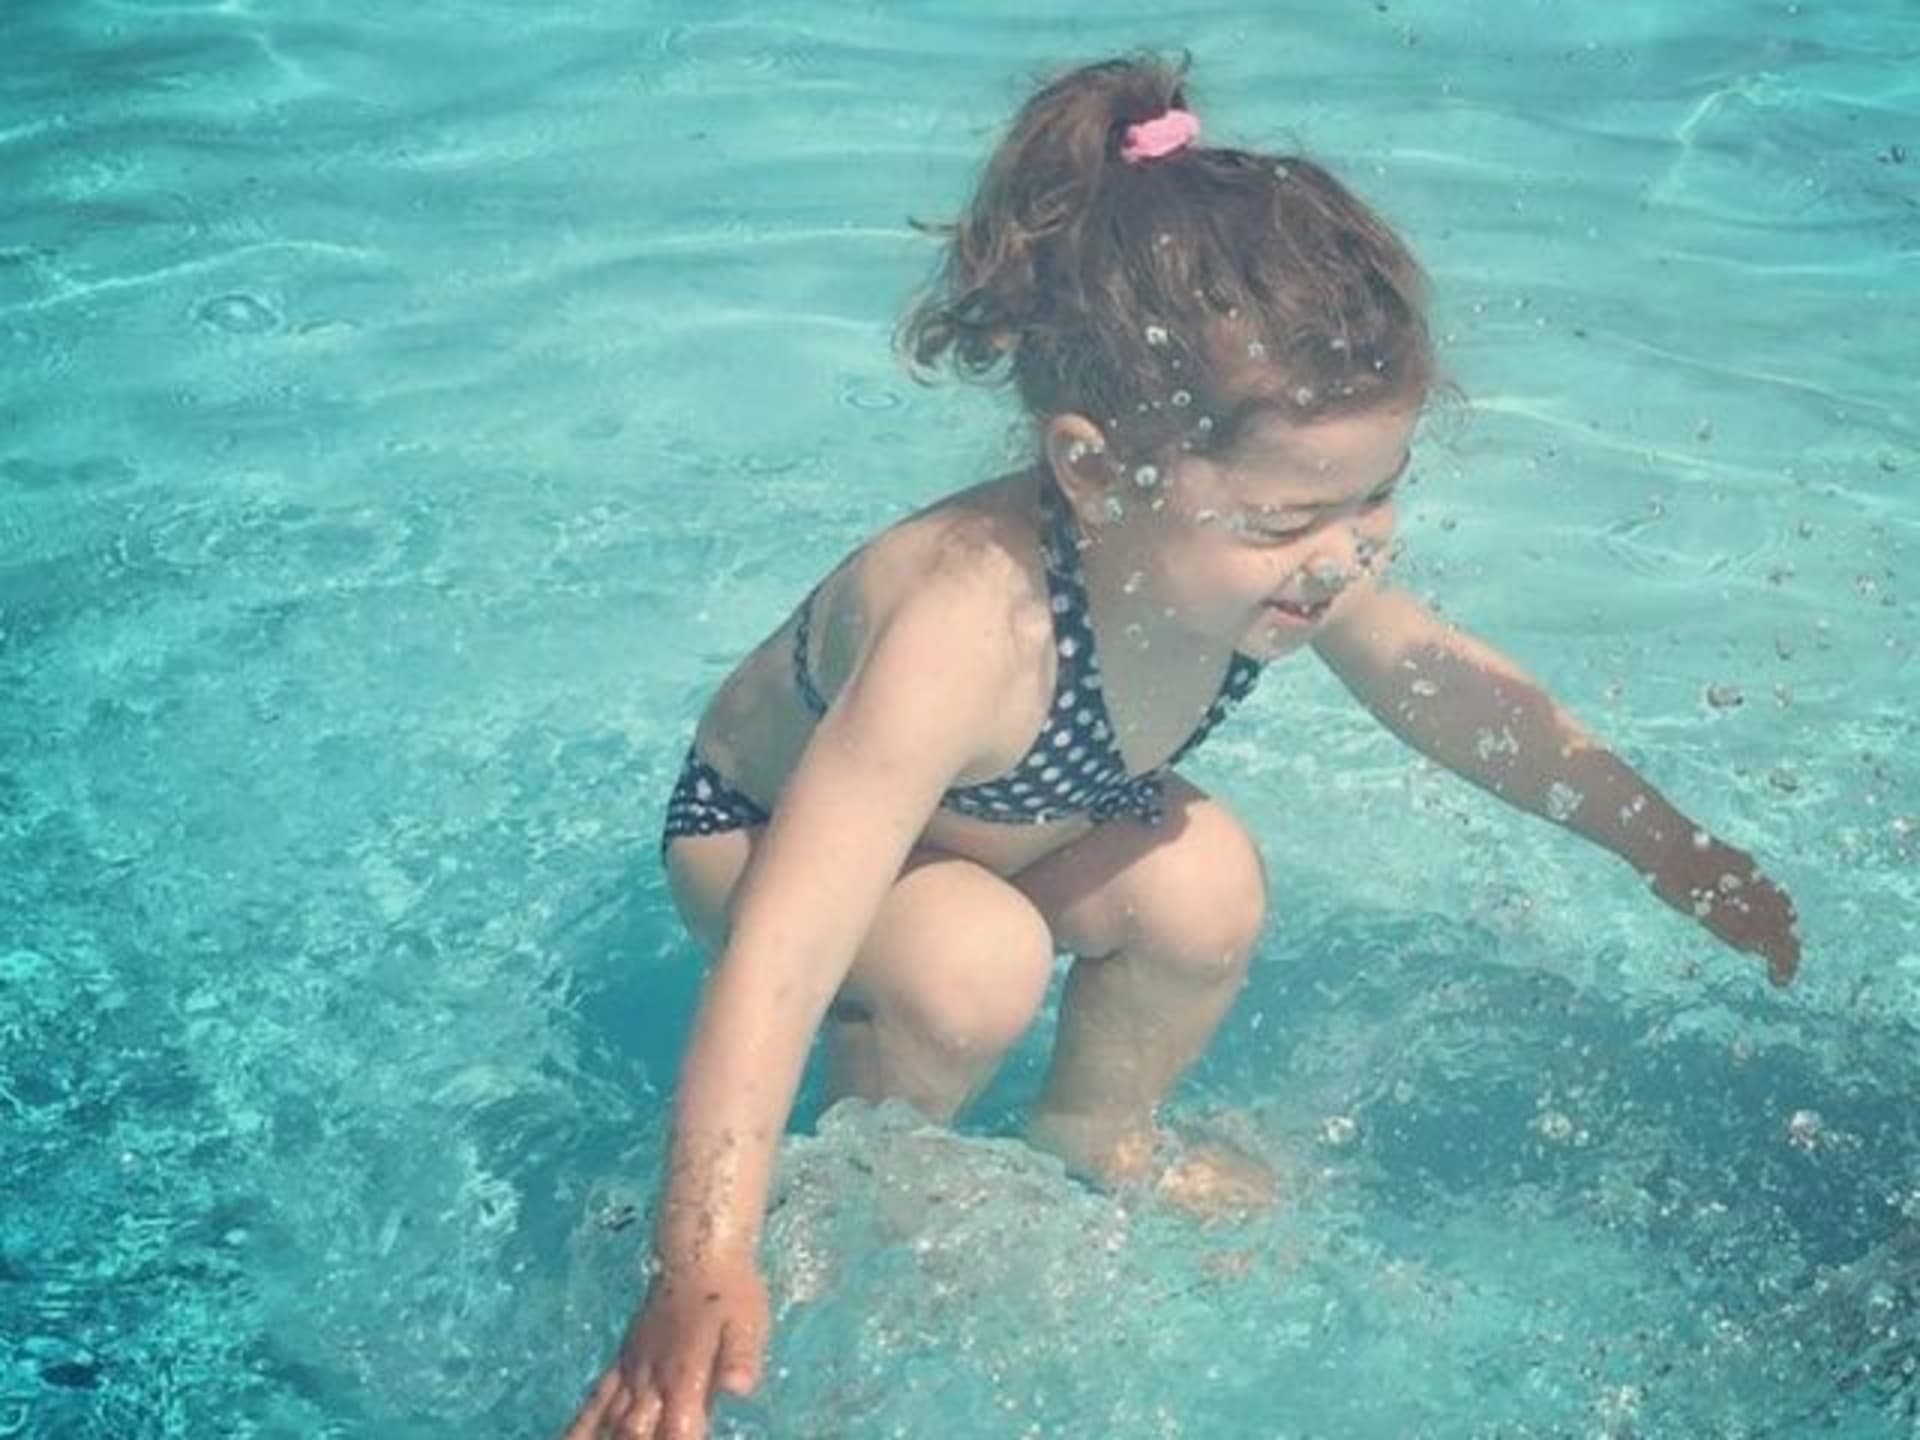 Je holčička pod vodou, nebo nad vodou?